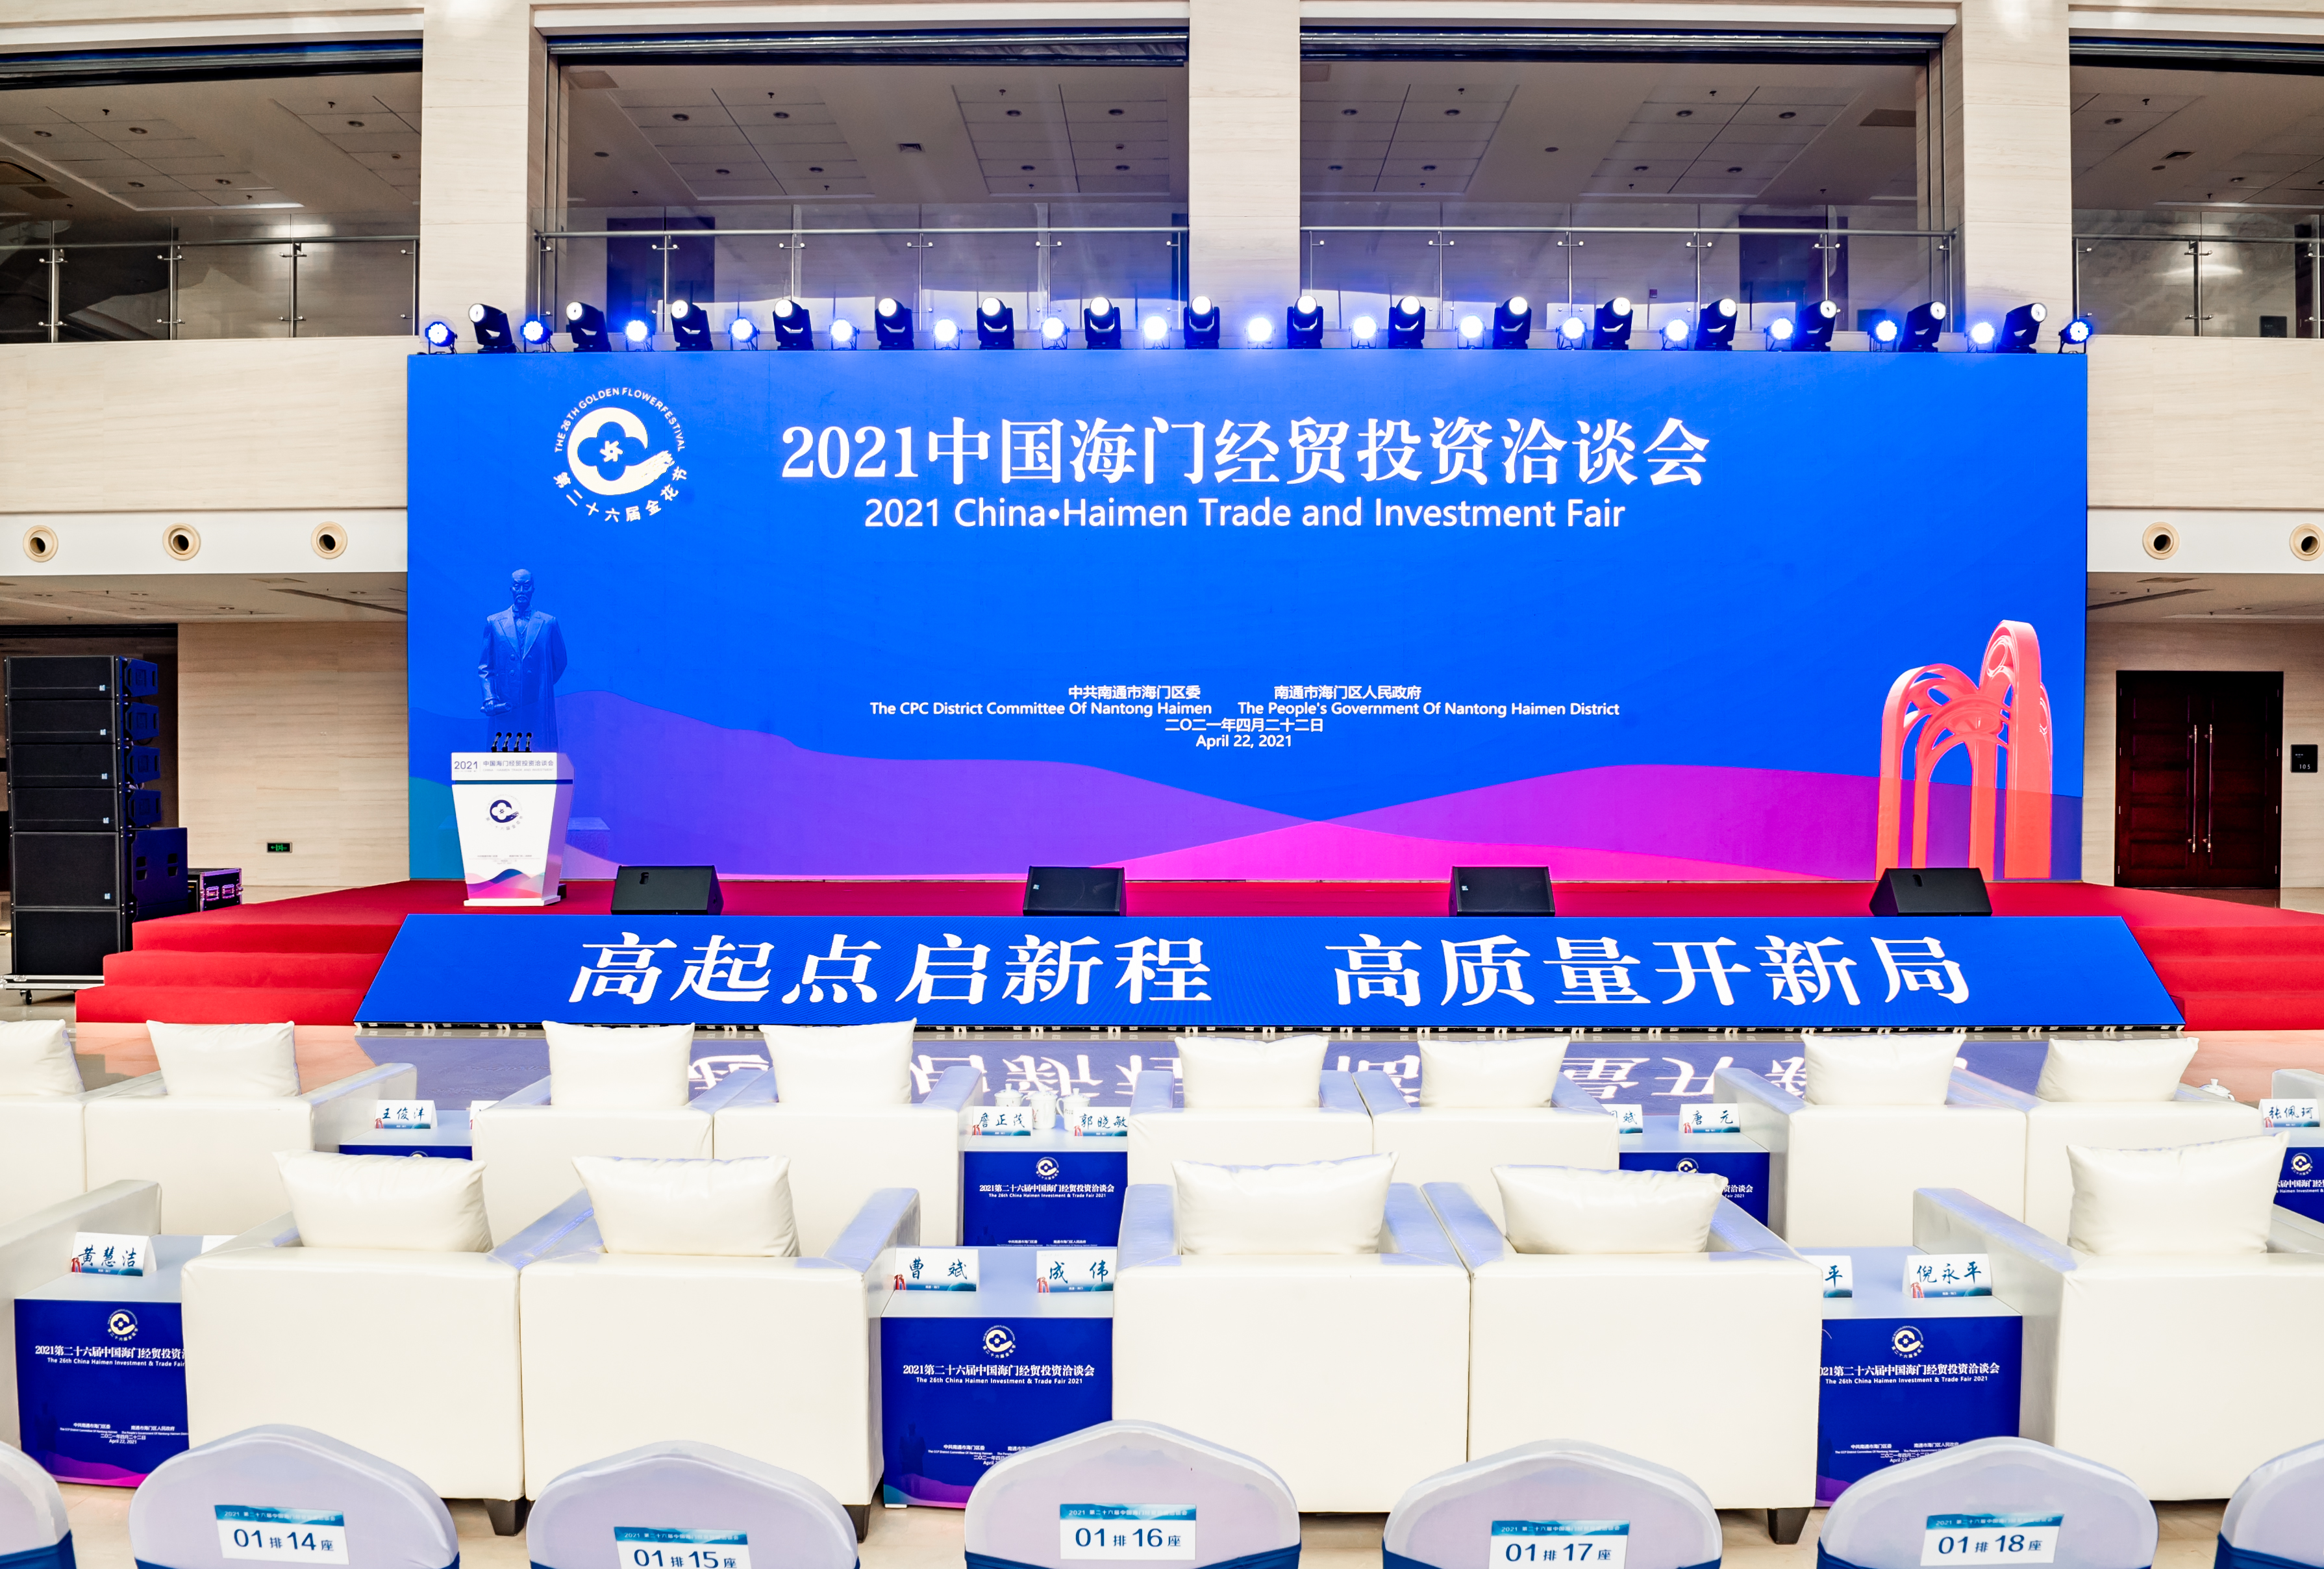 2021第二十六届中国海门经贸洽谈会